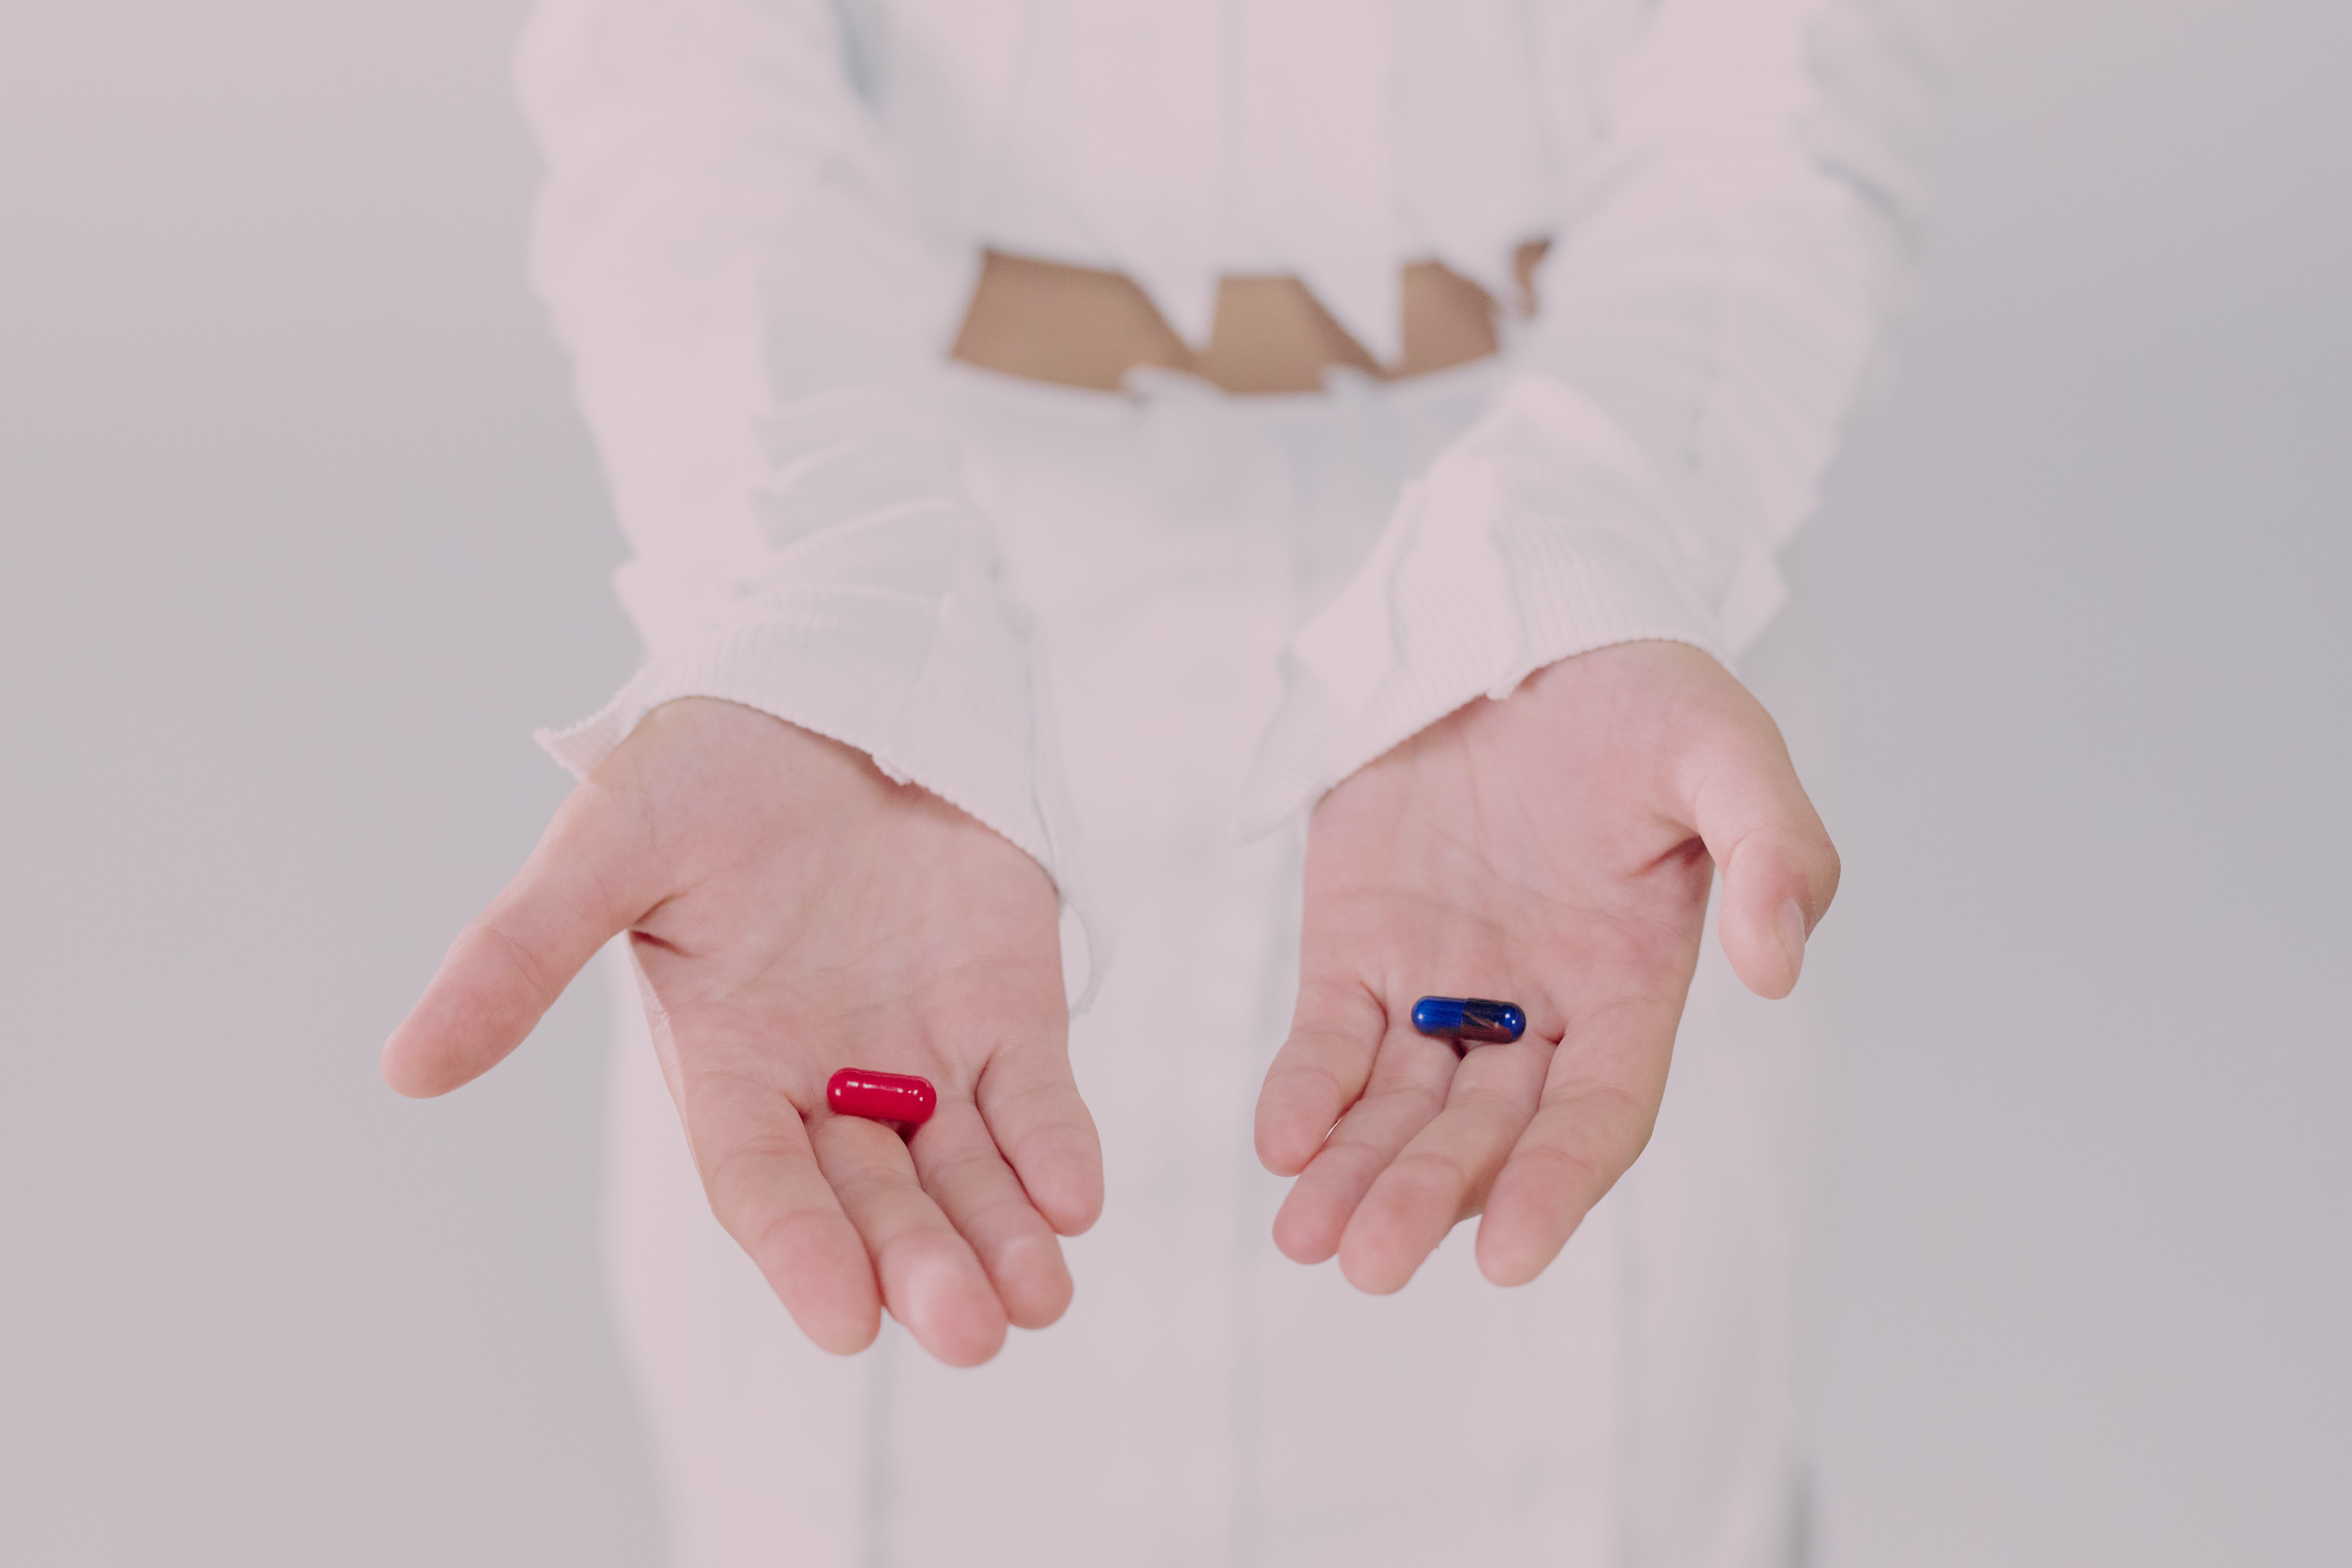 Tabletki w kolorze czerwonym i niebieskim podane na dłoniach